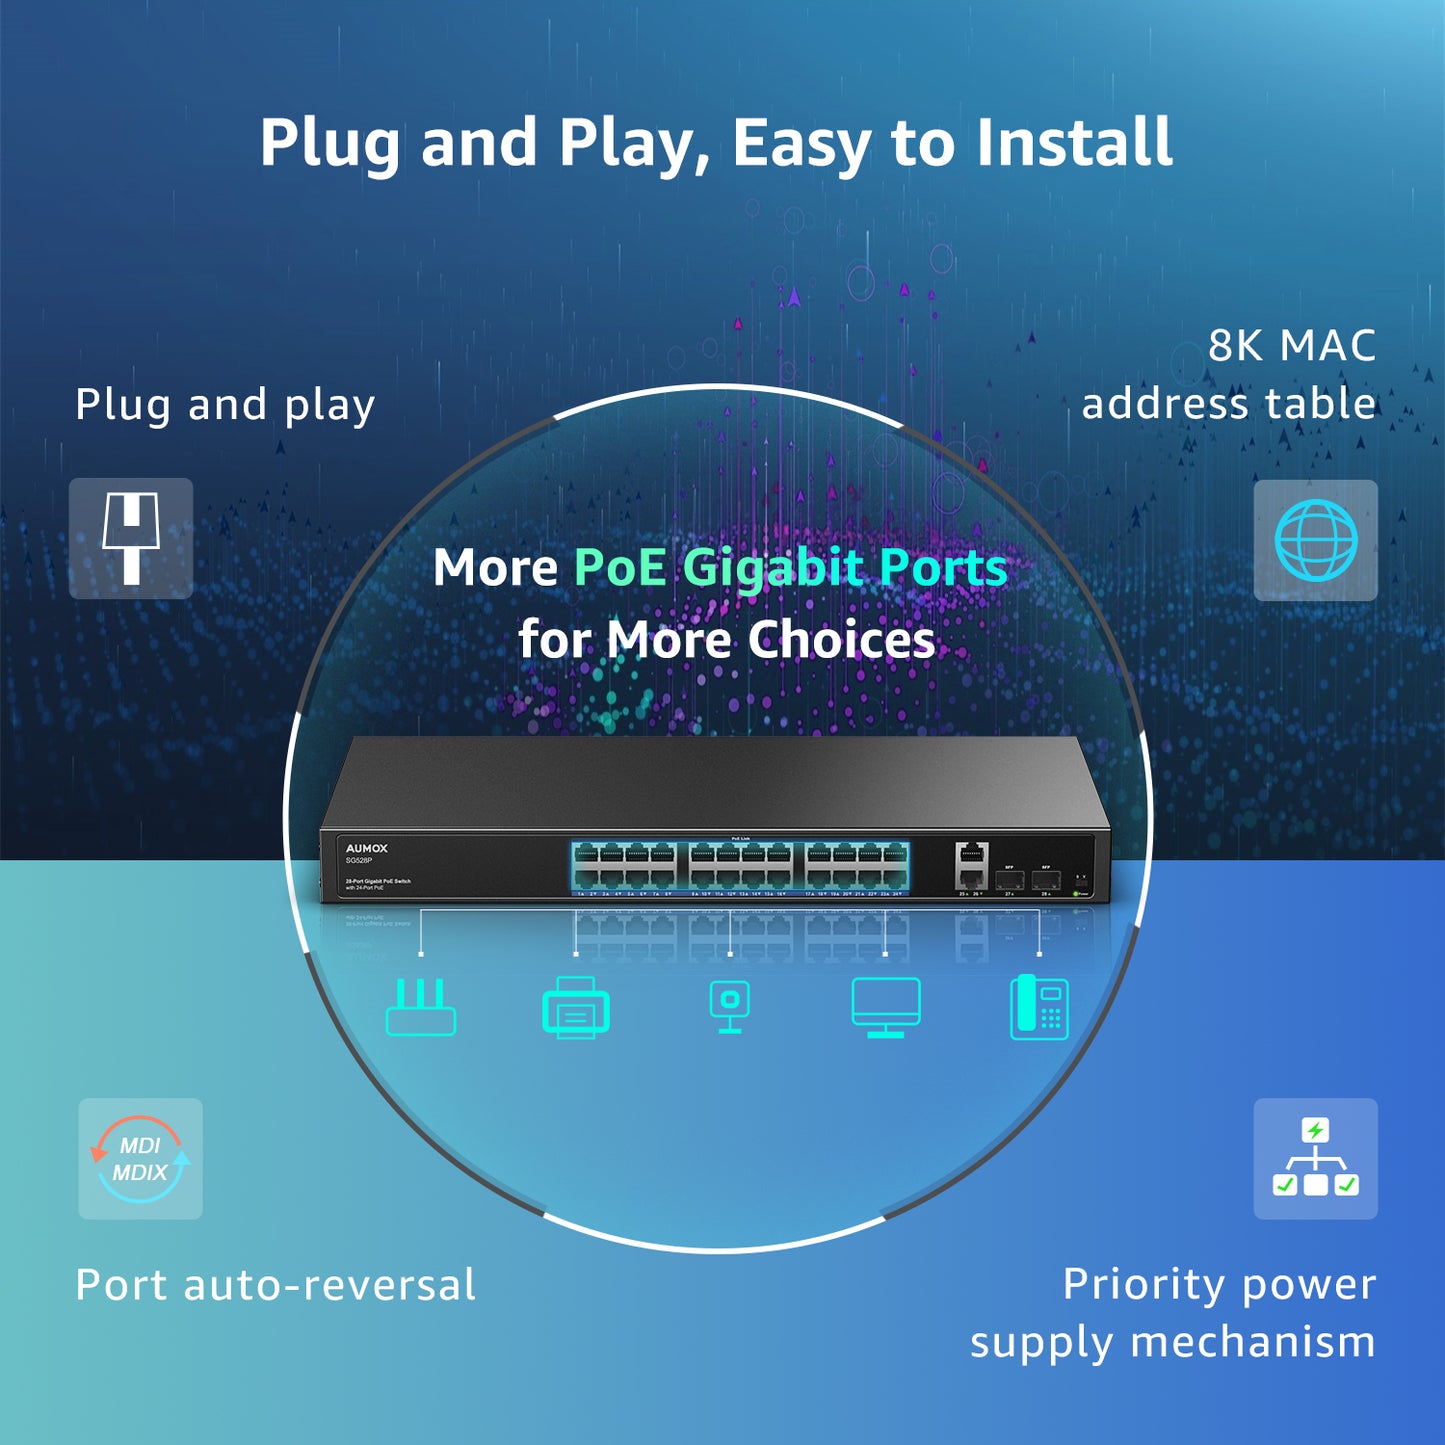 AUMOX 28 Port Gigabit PoE Switch 400W, with 24 Port PoE and 2 Uplink Ports (SG528P)